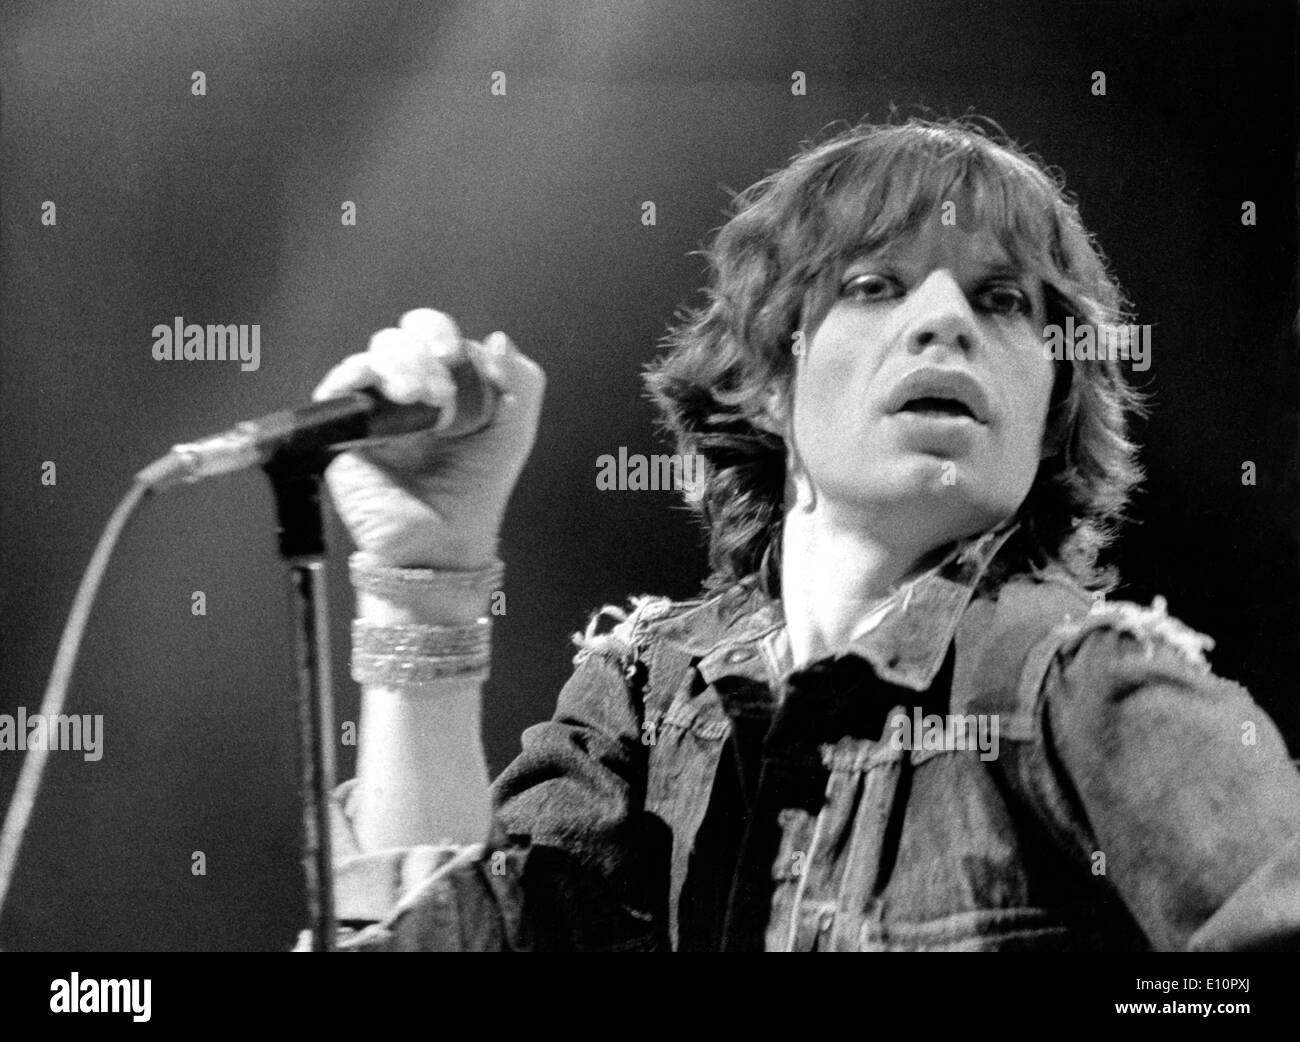 Rolling Stones cantante Mick Jagger suona in Monaco di Baviera Foto Stock